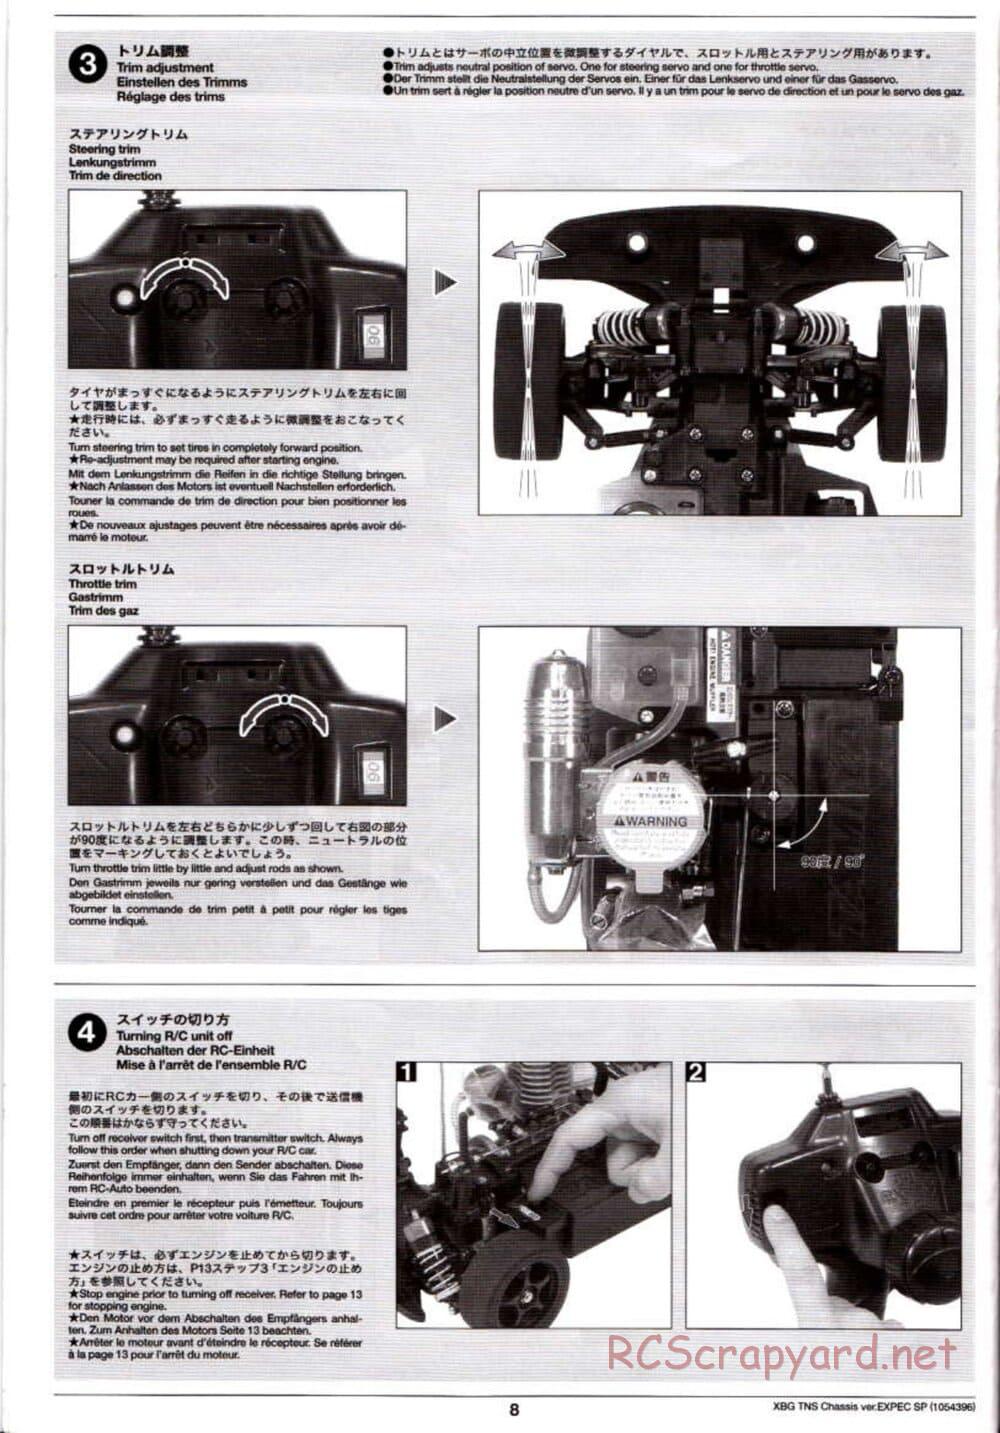 Tamiya - TNS Chassis - Manual - Page 8